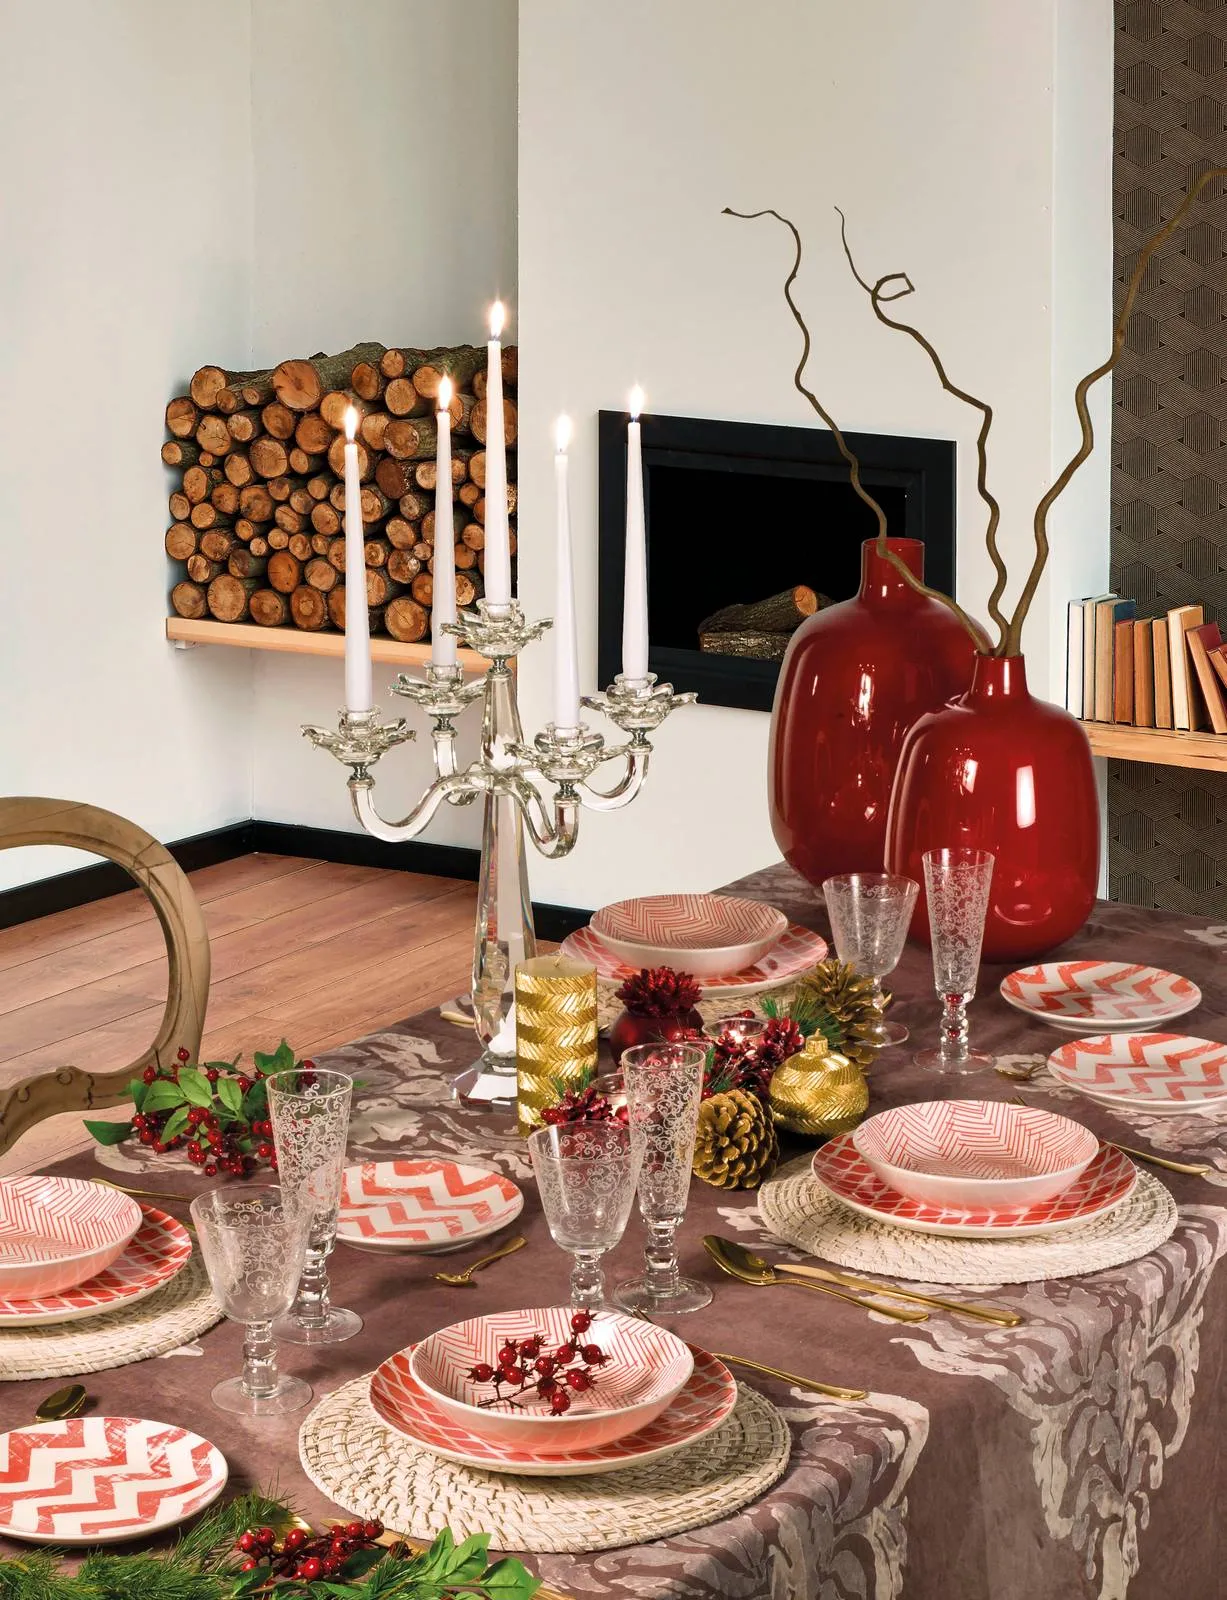 Tavola di Natale: piatti e decorazioni oro, rosso, bianco - Cose di Casa